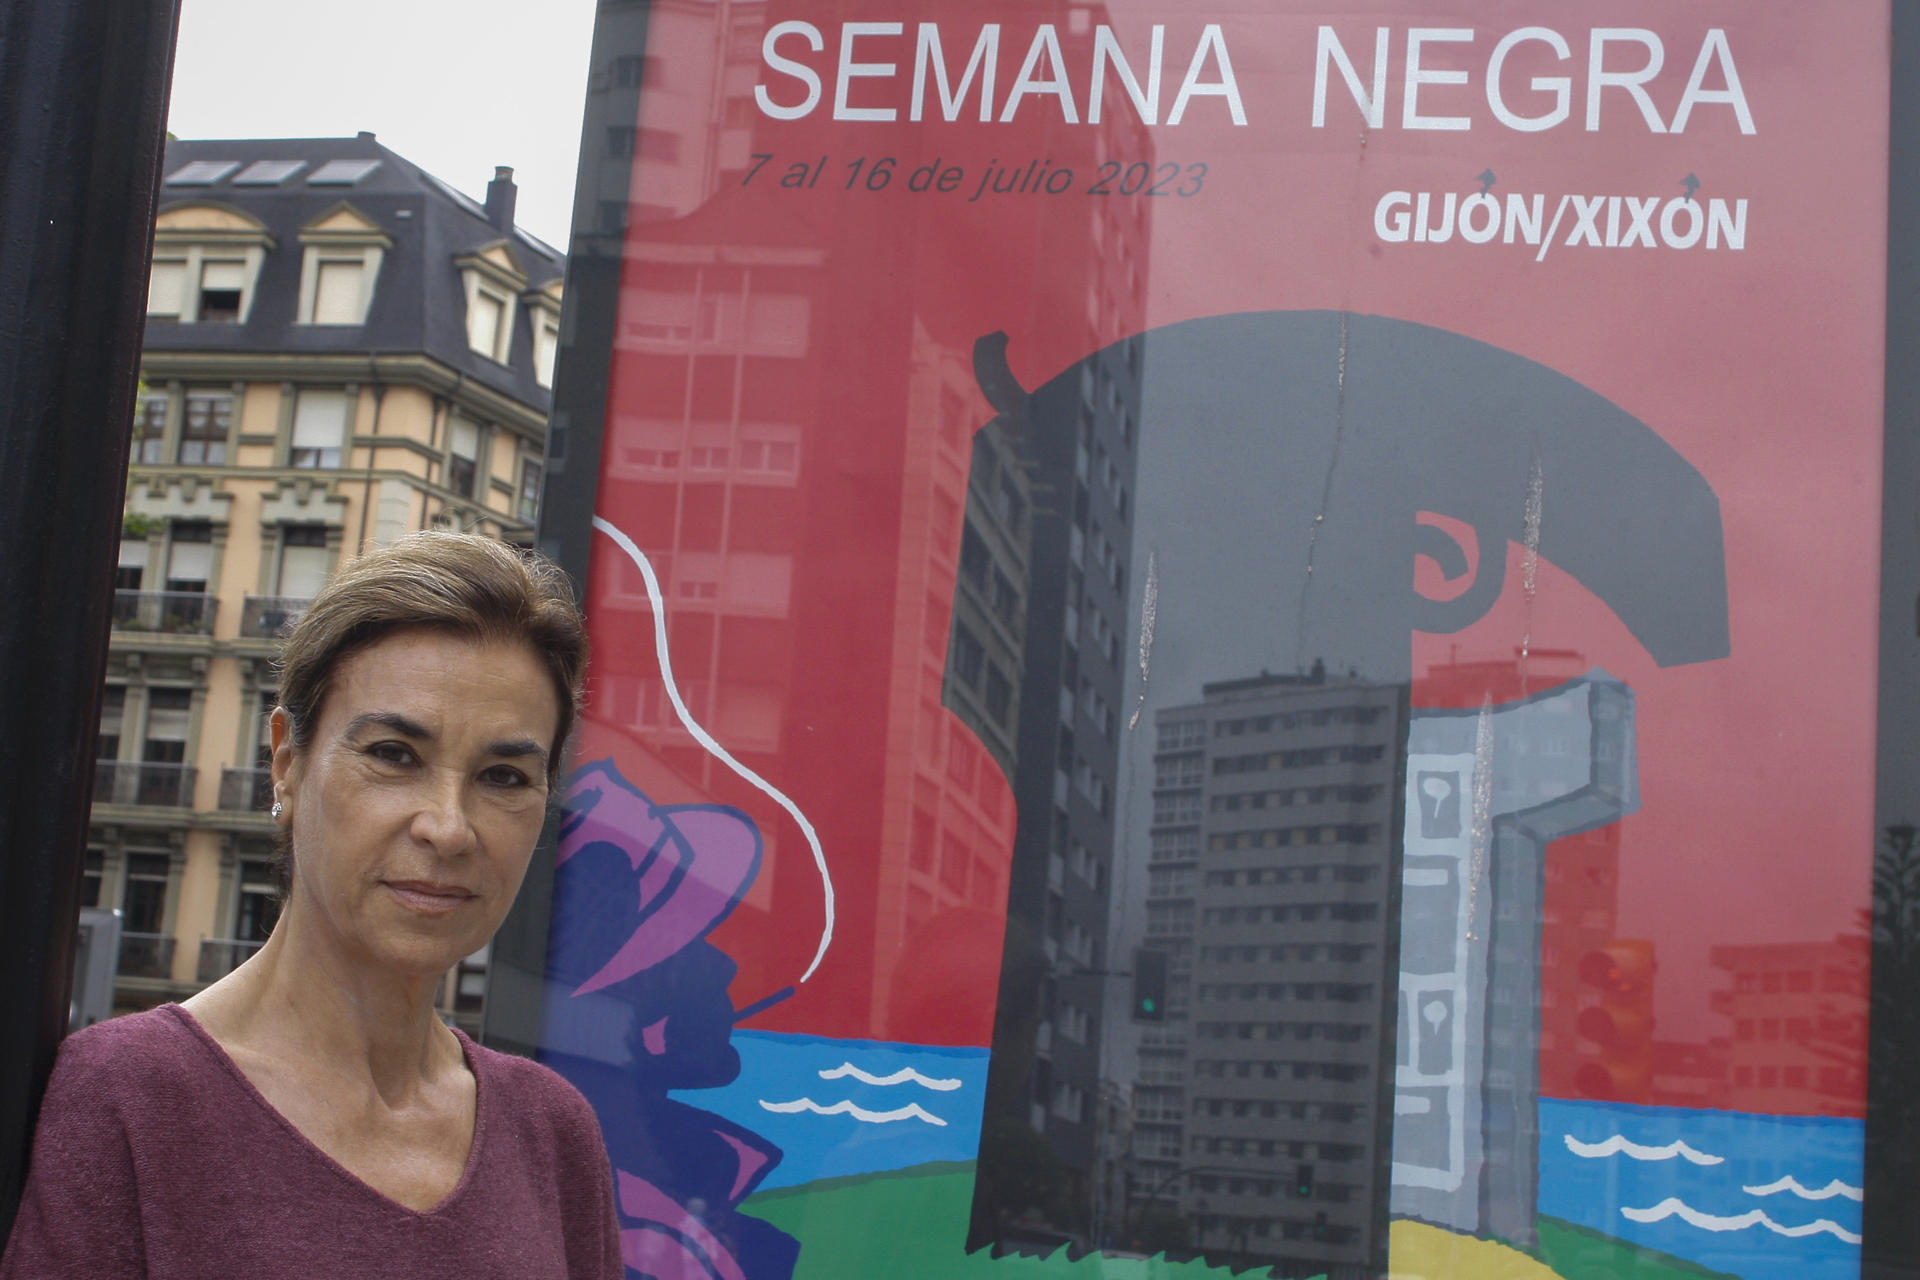 La escritora uruguaya Carmen Posadas atiende a los medios de comunicación este miércoles en la Semana Negra de Gijón, donde presentó su novela "Licencia para espiar". EFE/Juan González.